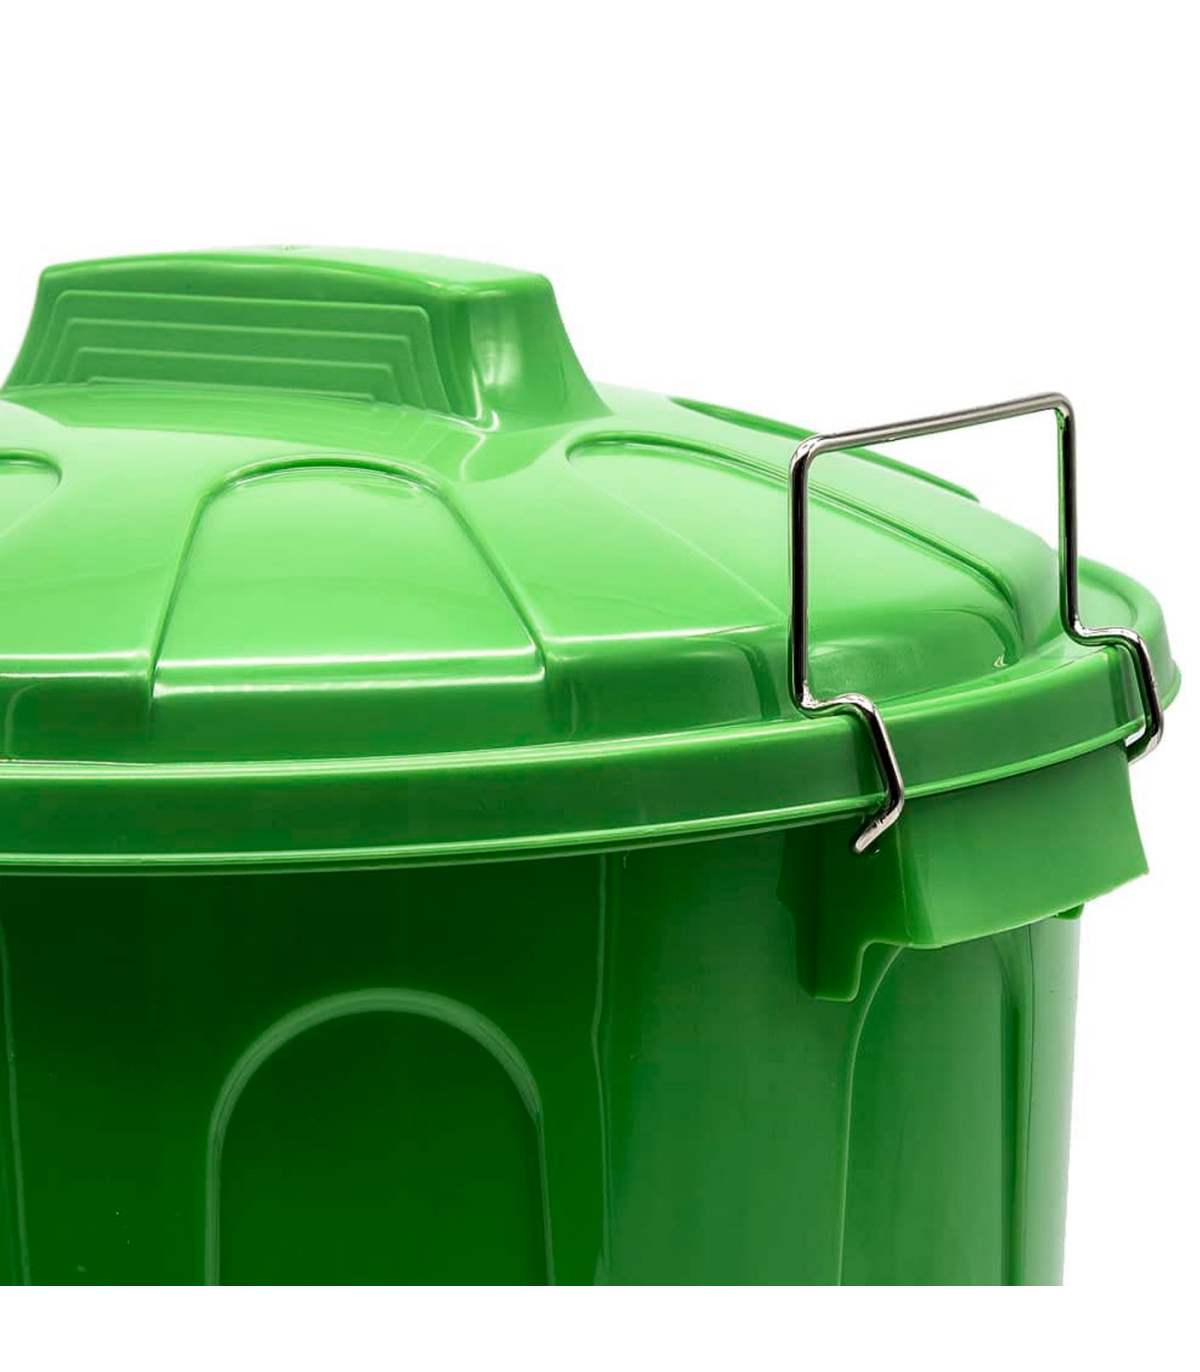 Cubo de basura de plástico con asas metálicas, contenedor de residuos,  papelera con tapa, reciclaje, industrial, hog